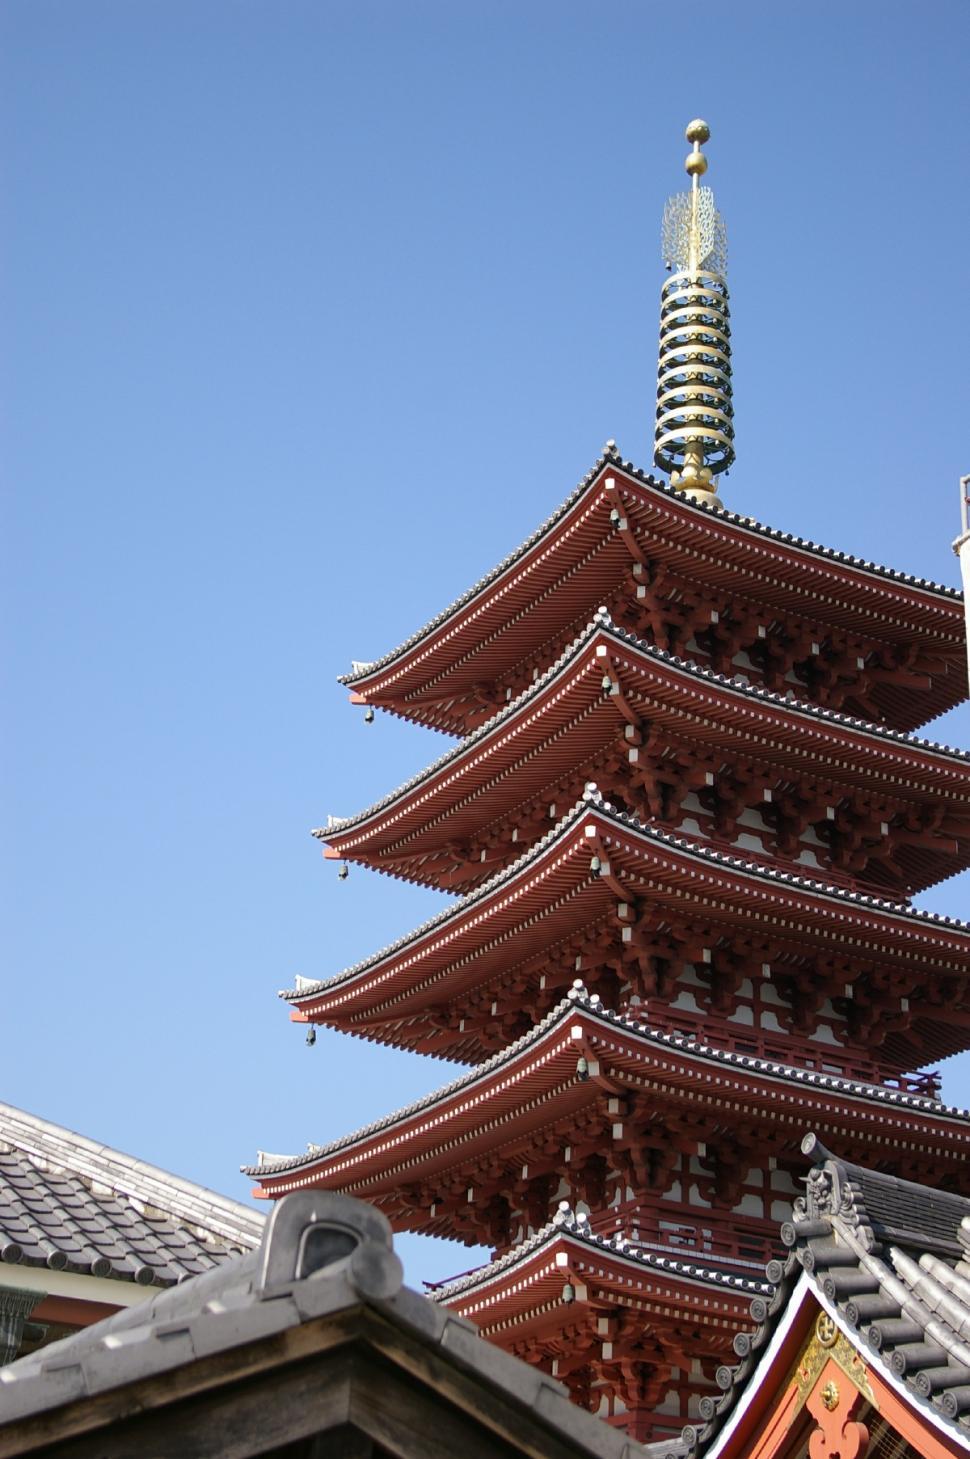 Free Image of Nara, Japan Pagoda 